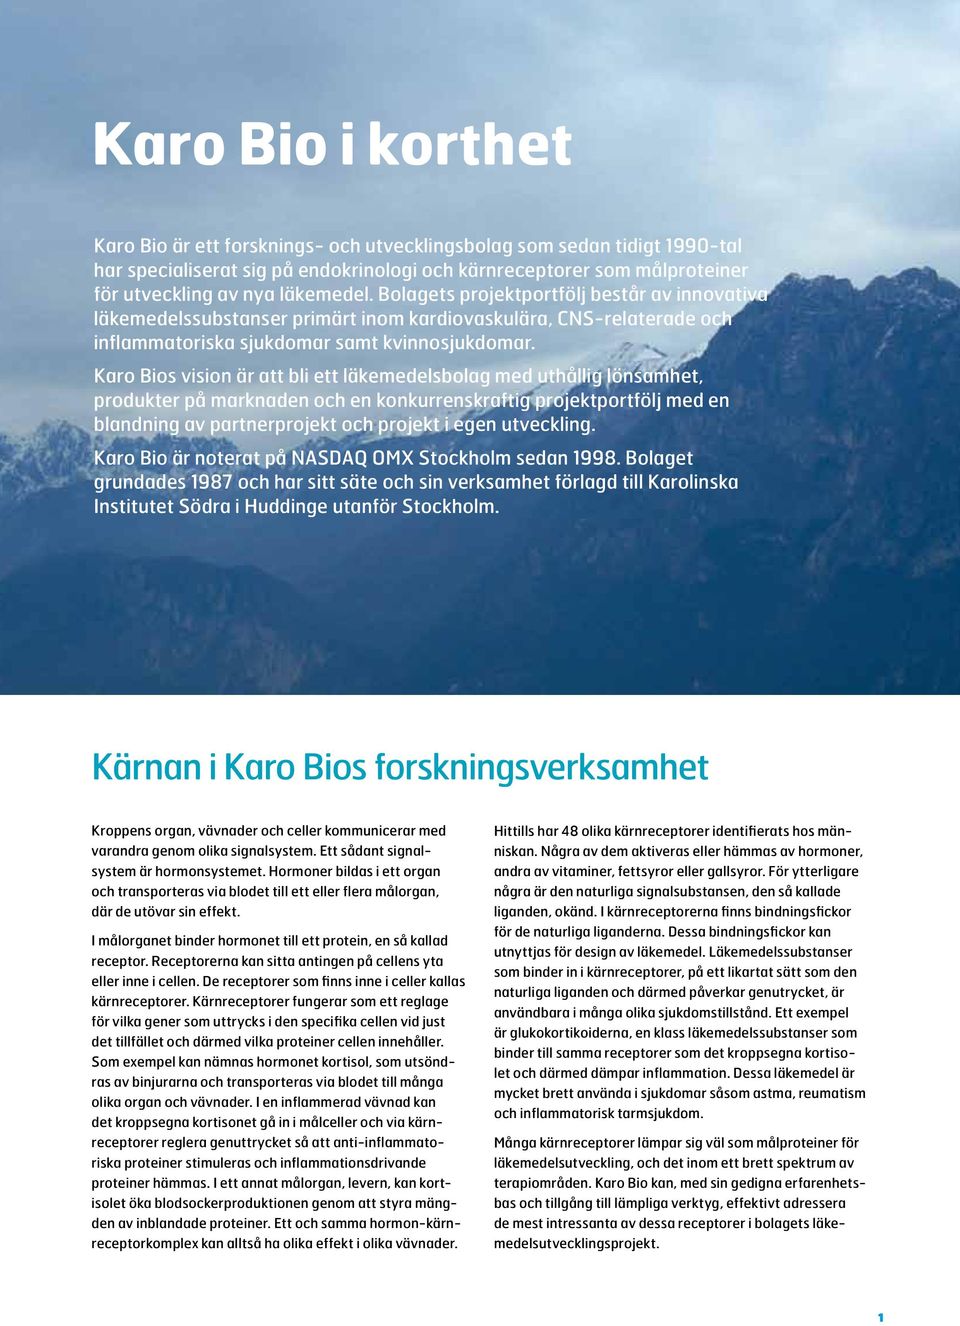 Karo Bios vision är att bli ett läkemedelsbolag med uthållig lönsamhet, produkter på marknaden och en konkurrenskraftig projektportfölj med en blandning av partnerprojekt och projekt i egen